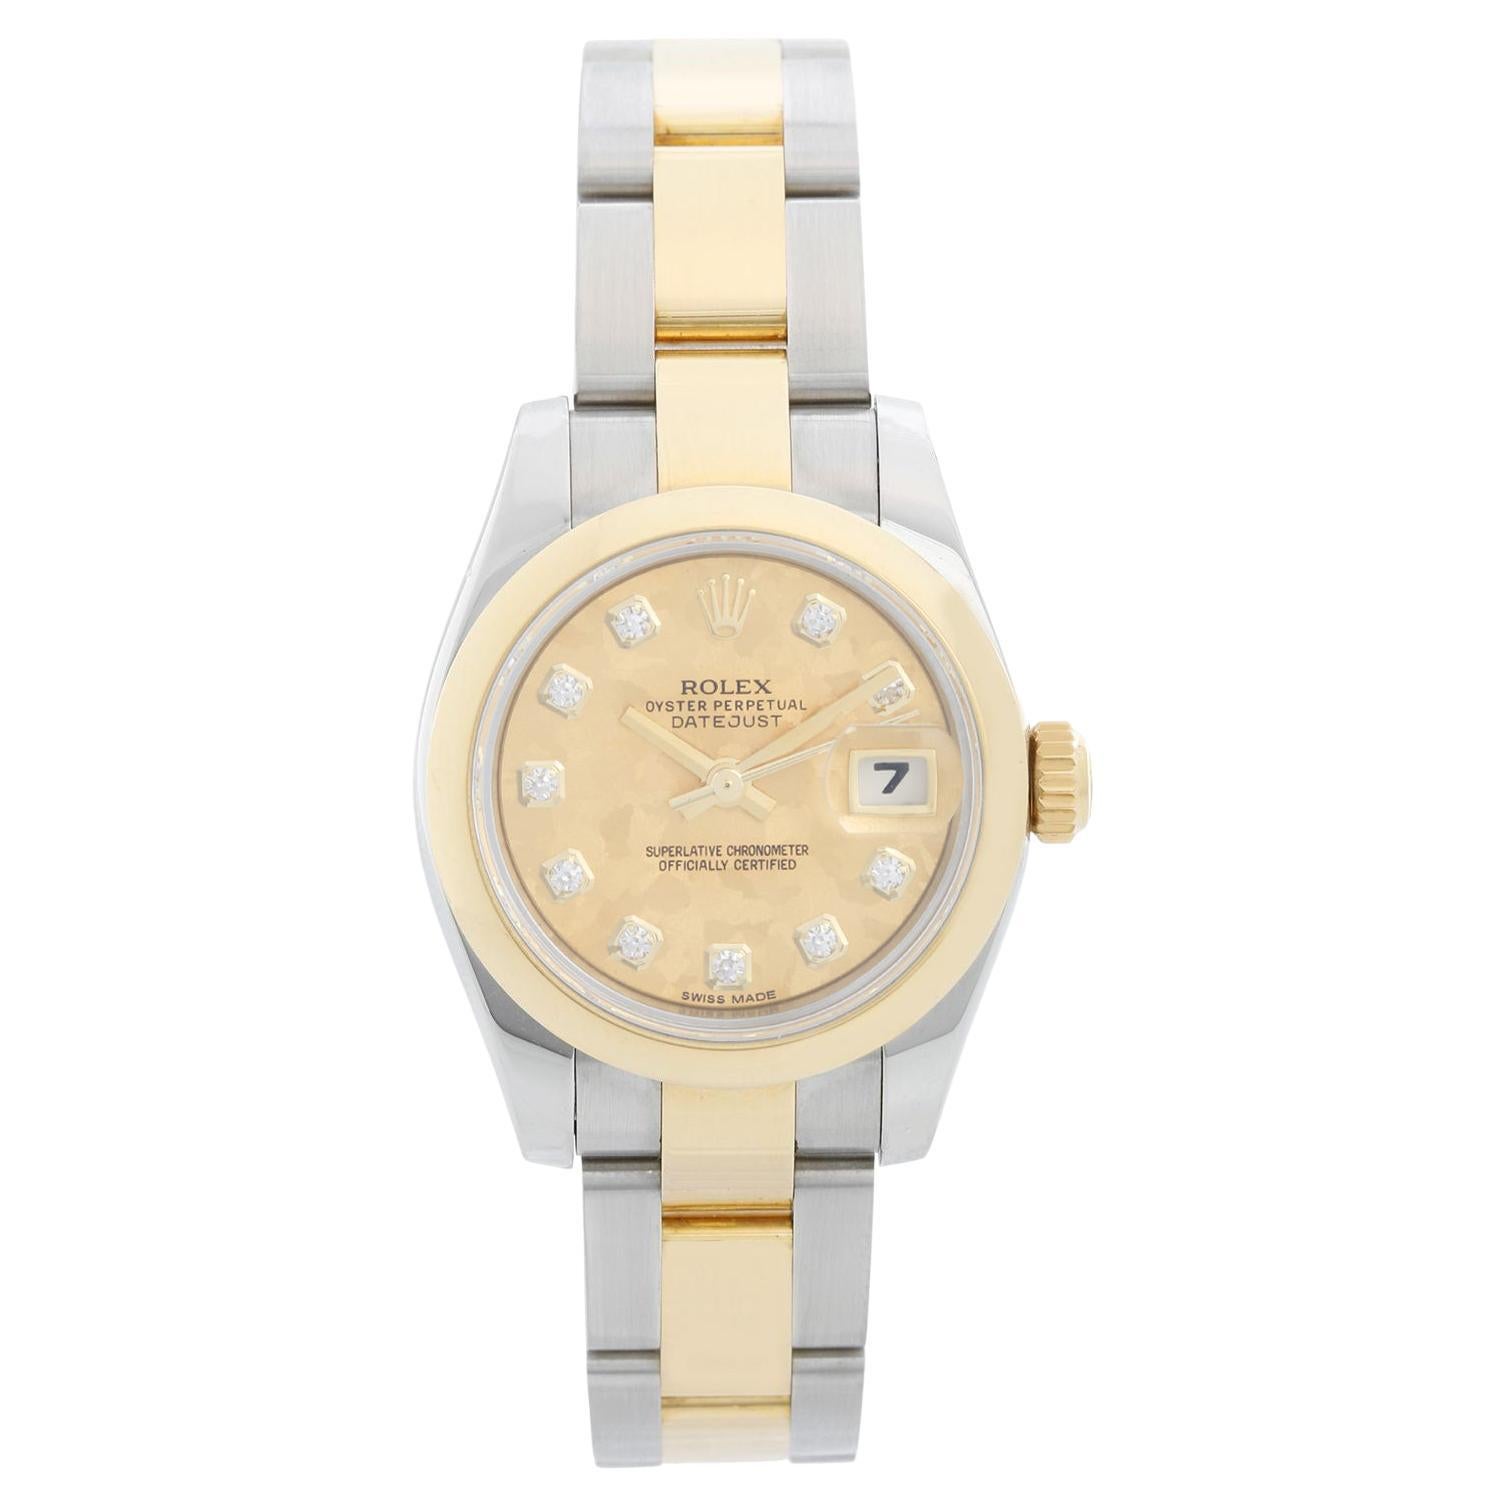 Reloj Rolex Datejust para señora de acero inoxidable y oro de 18 quilates 179163